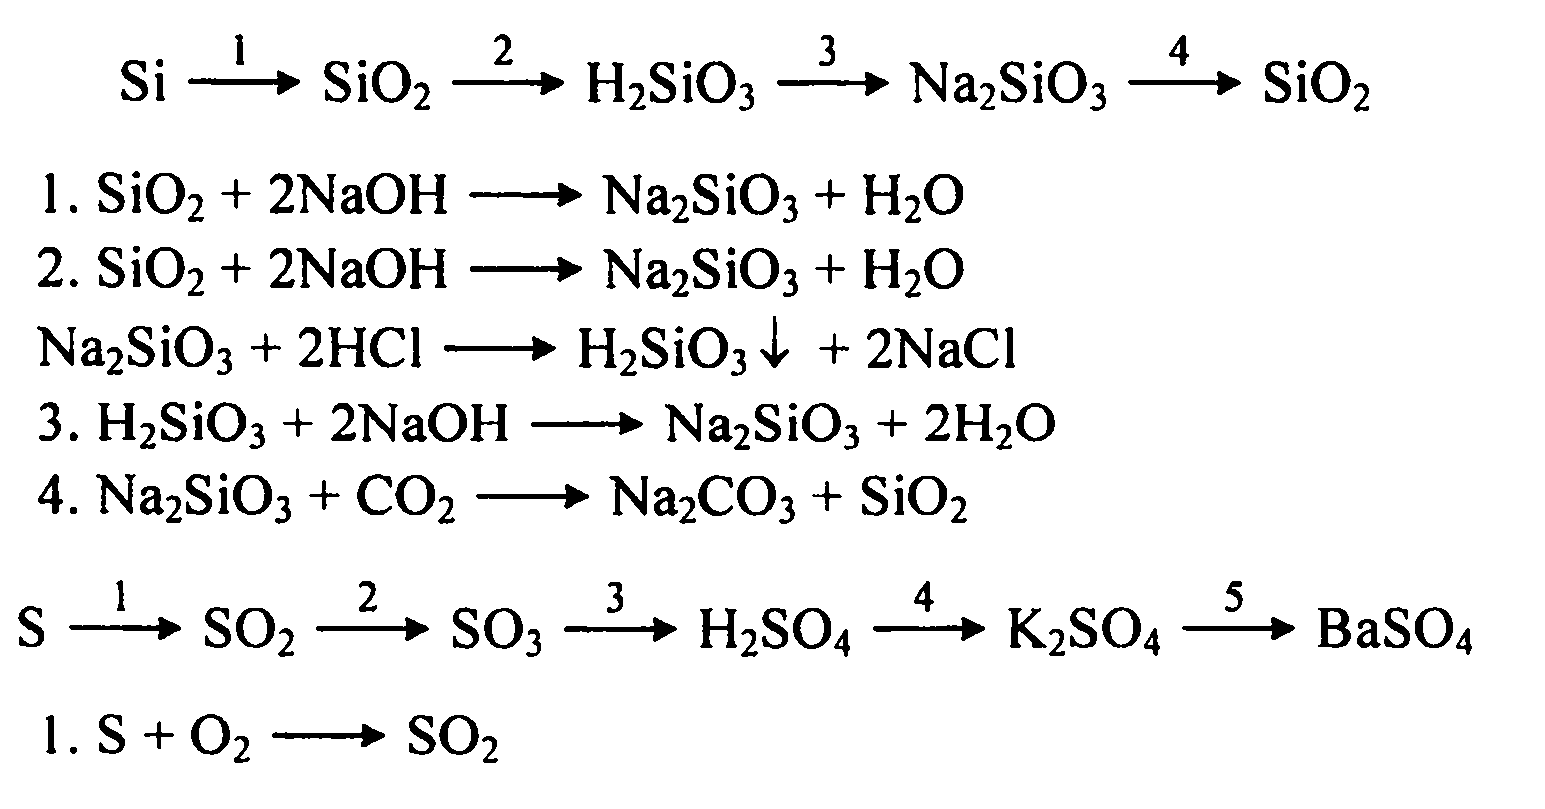 Sio2 koh k2sio3 h2o. Цепочки в реакции с кремнием 9 класс. Цепочка химических реакций кремний. Генетический ряд натрия с уравнениями реакций для 9 класса. Генетическая цепочка химия.